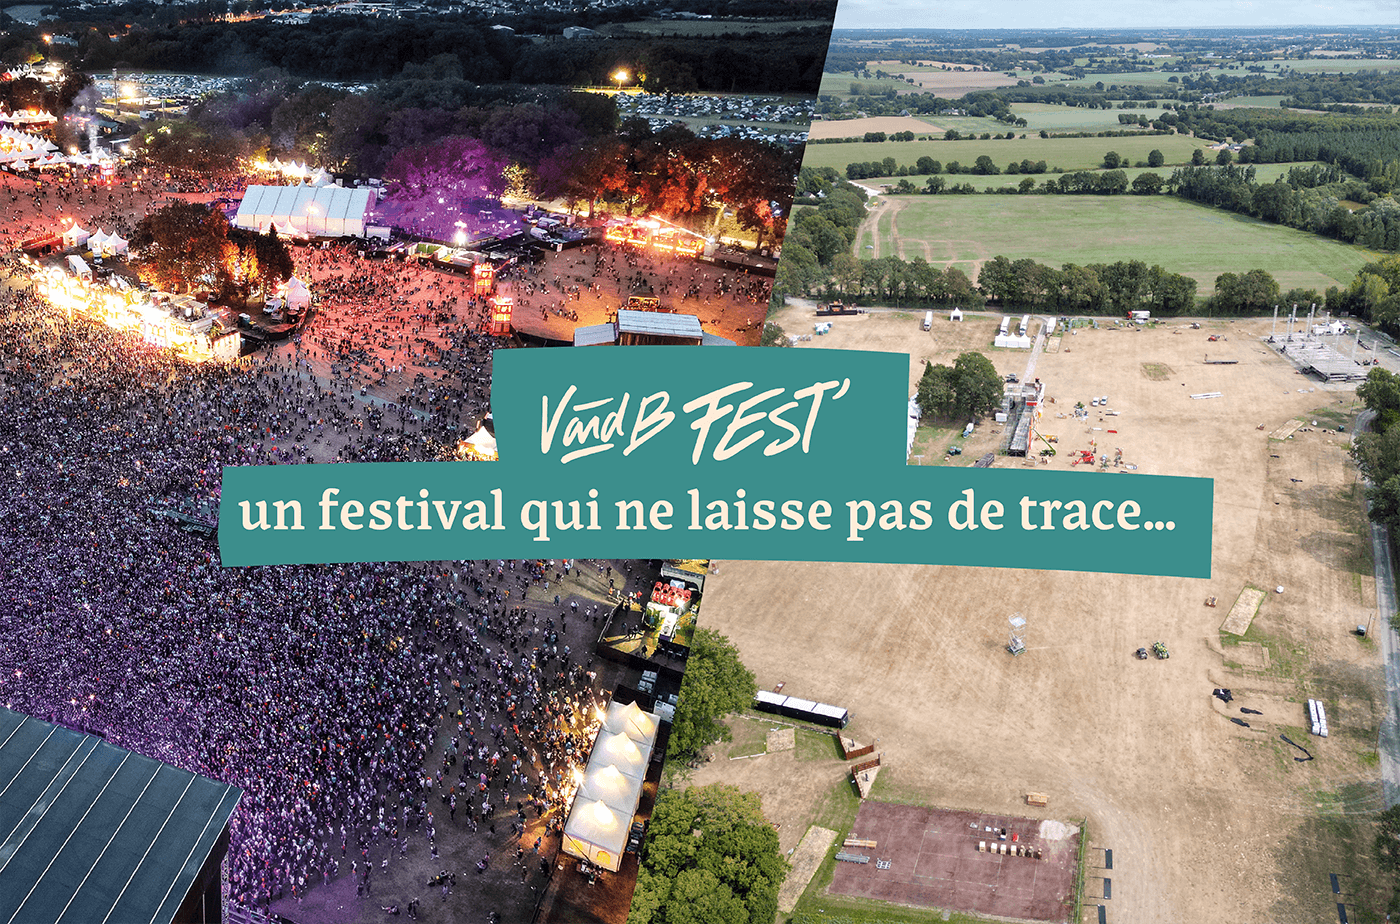 V and B Fest', un festival qui ne laisse pas de trace : les coulisses à travers son aspect logistique et environnemental